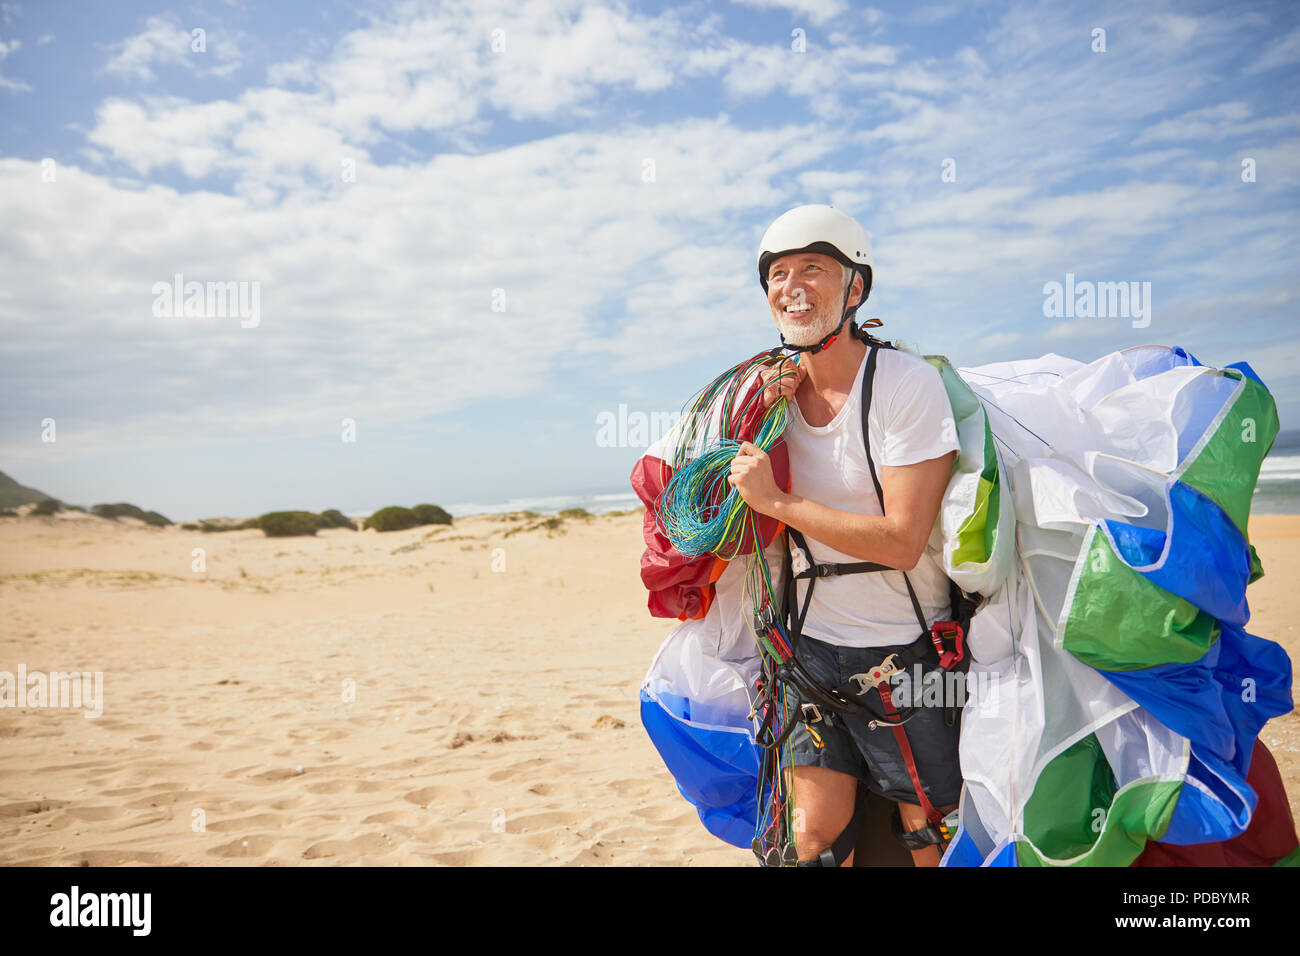 Macho sonriente transportando equipos de parapente y paracaidismo en sunny beach Foto de stock